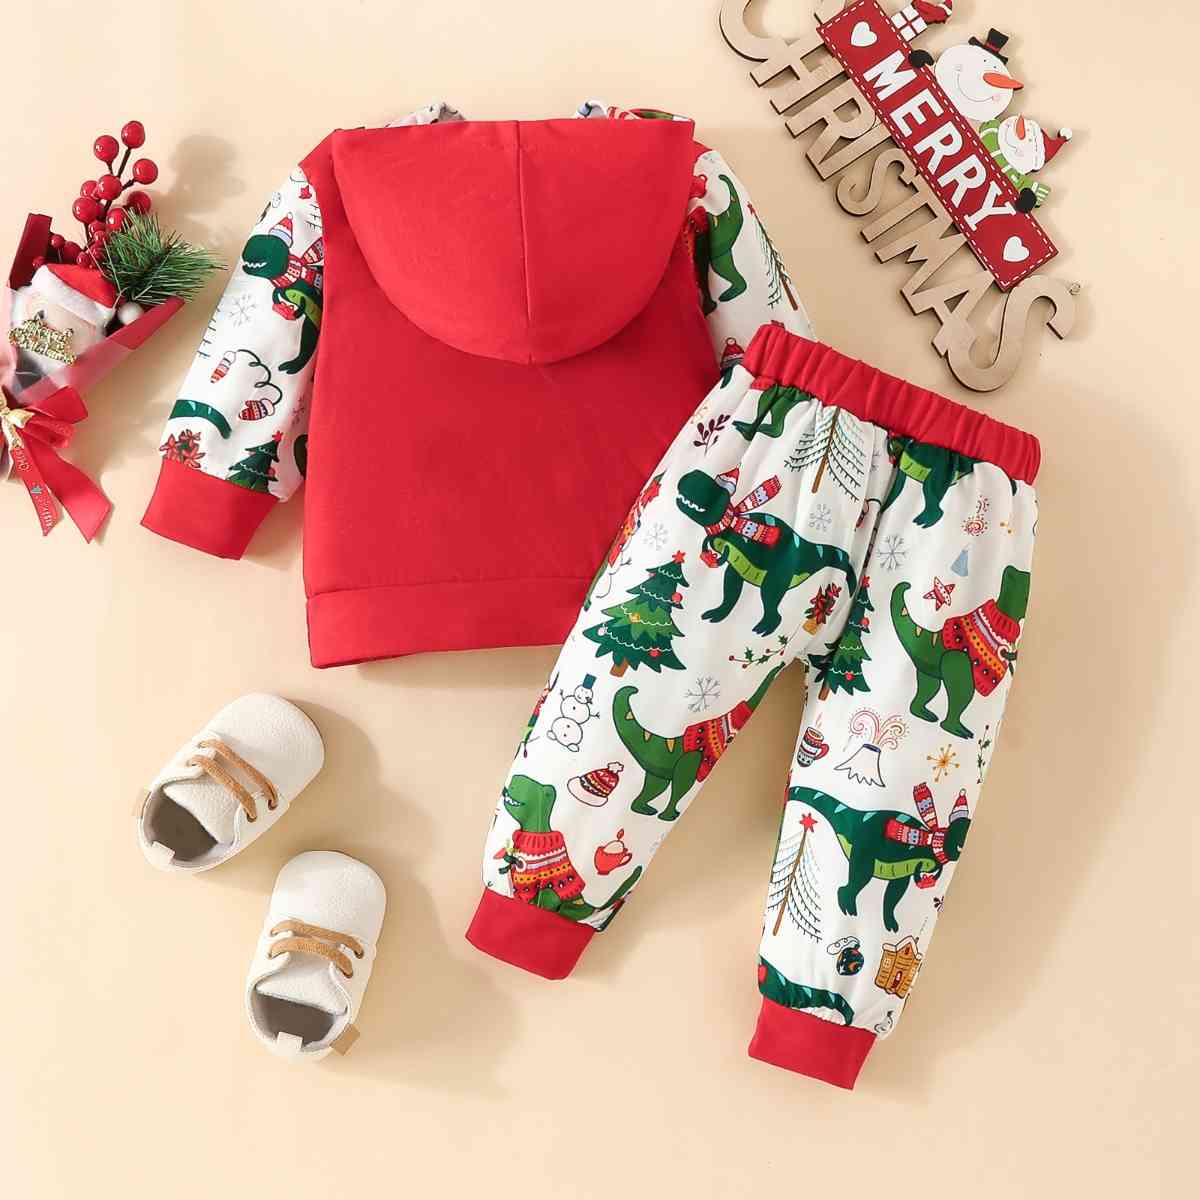 MERRY CHRISTMAS Hoodie and Pants Set - Kenchima 